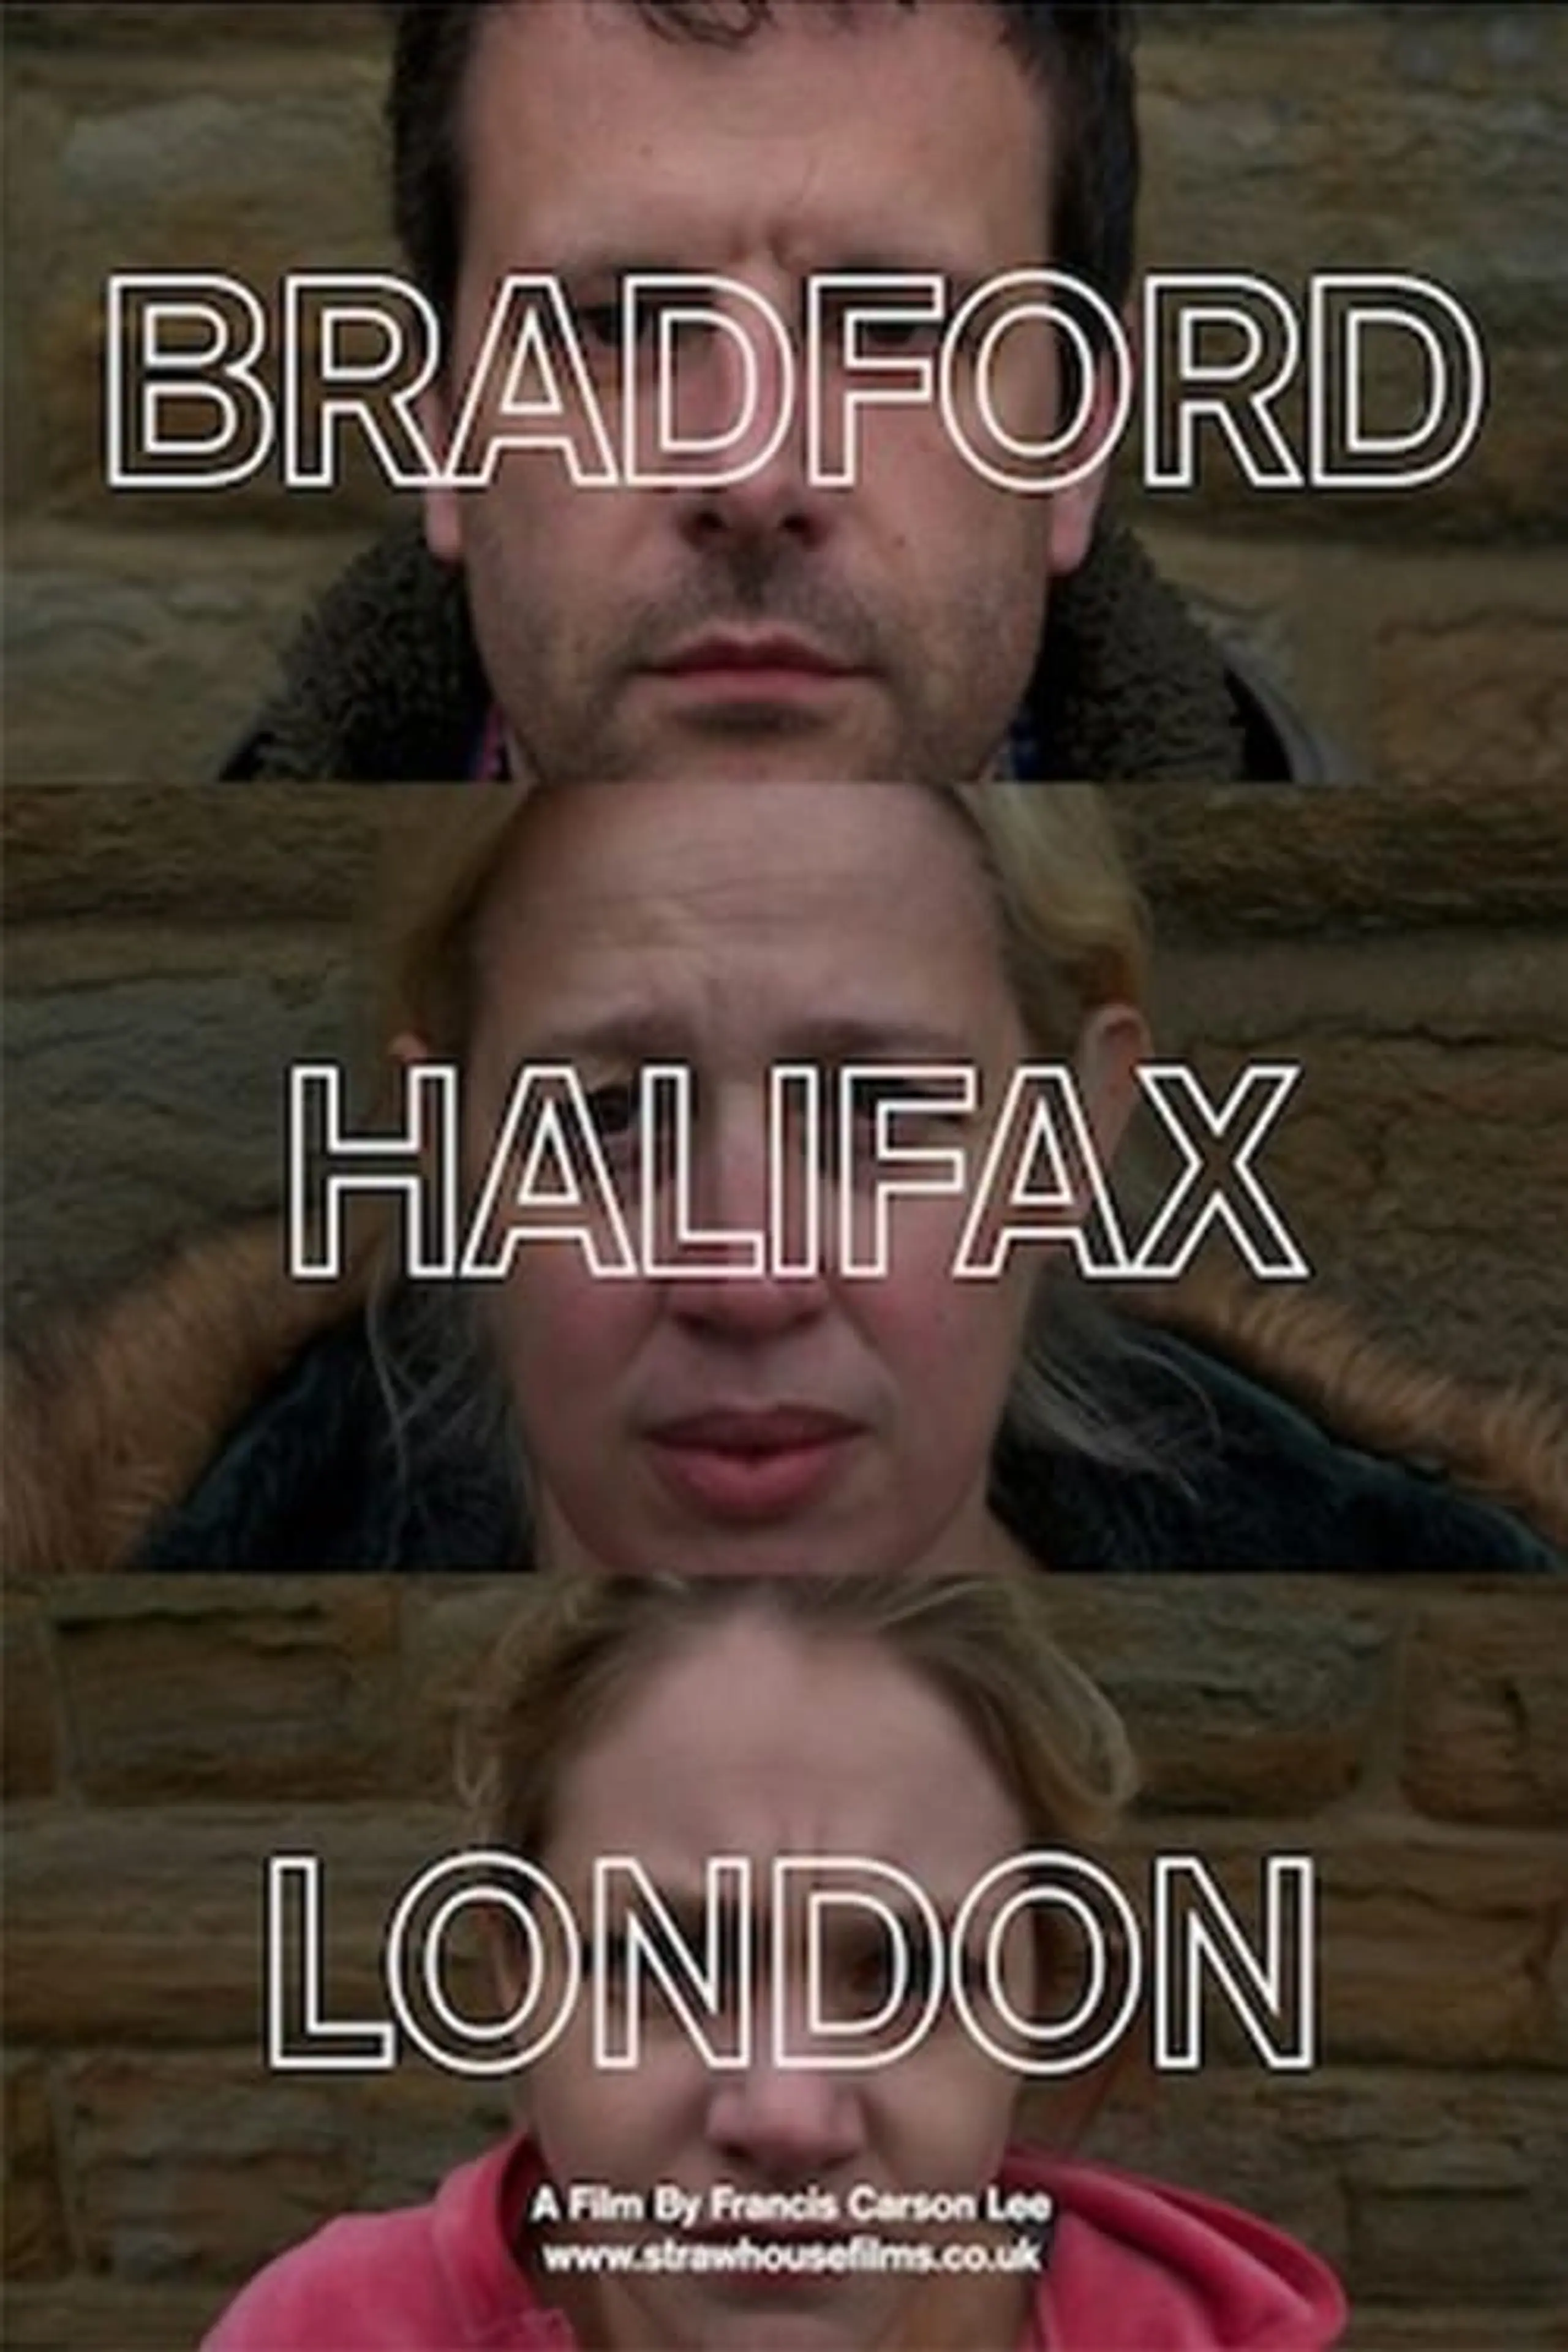 Bradford-Halifax-London